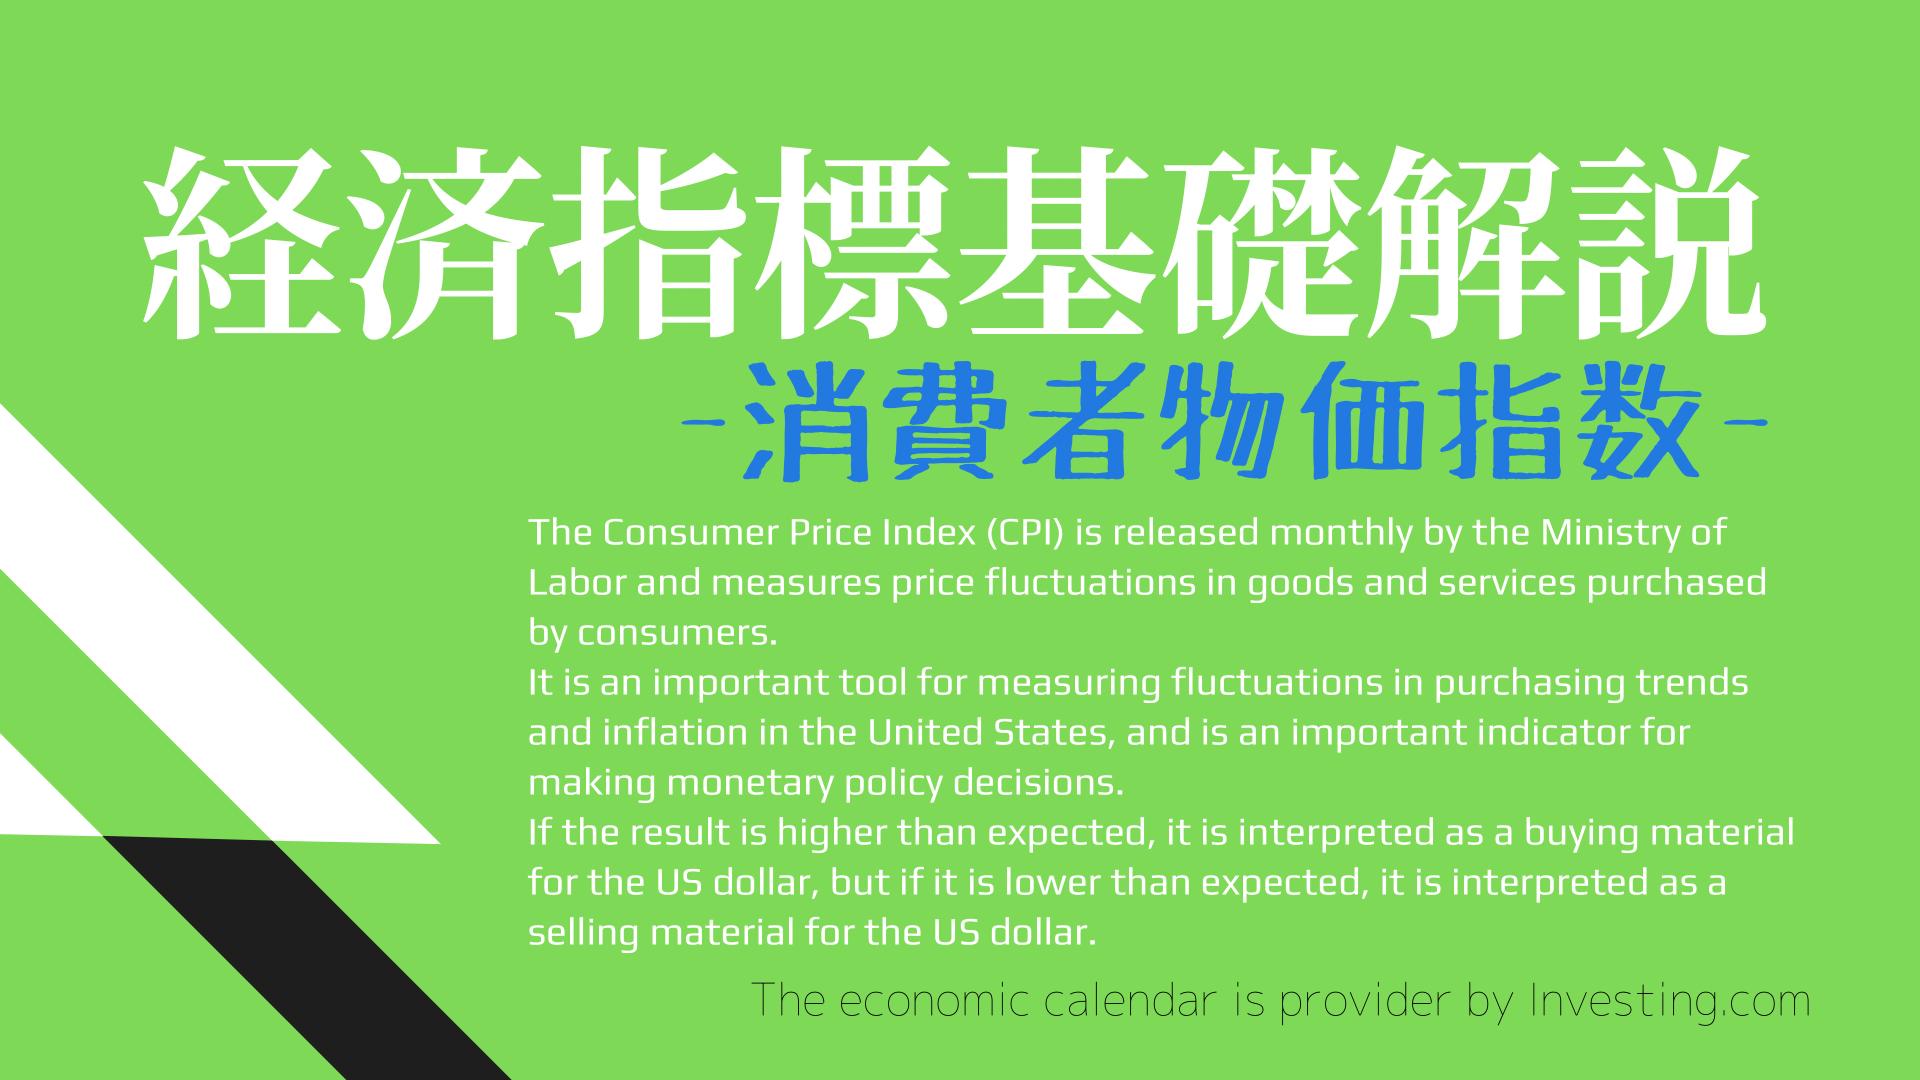 consumer-price-index-inknowf